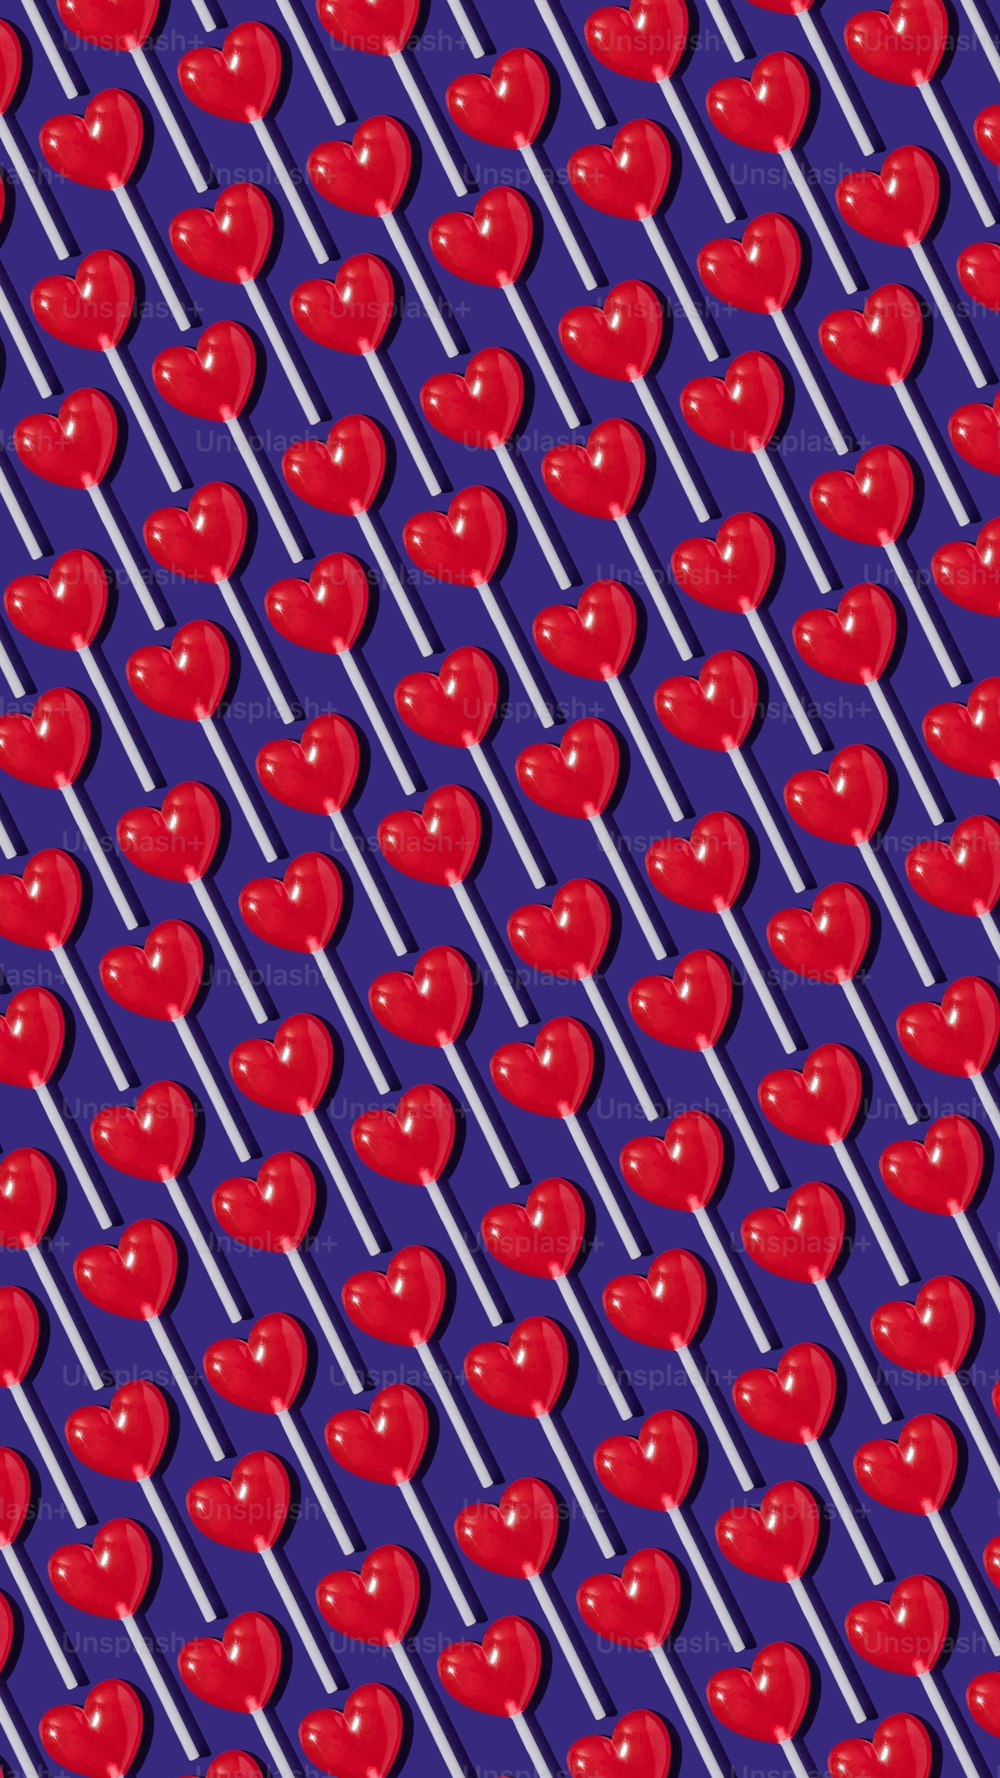 Un modello di mele rosse su uno sfondo viola